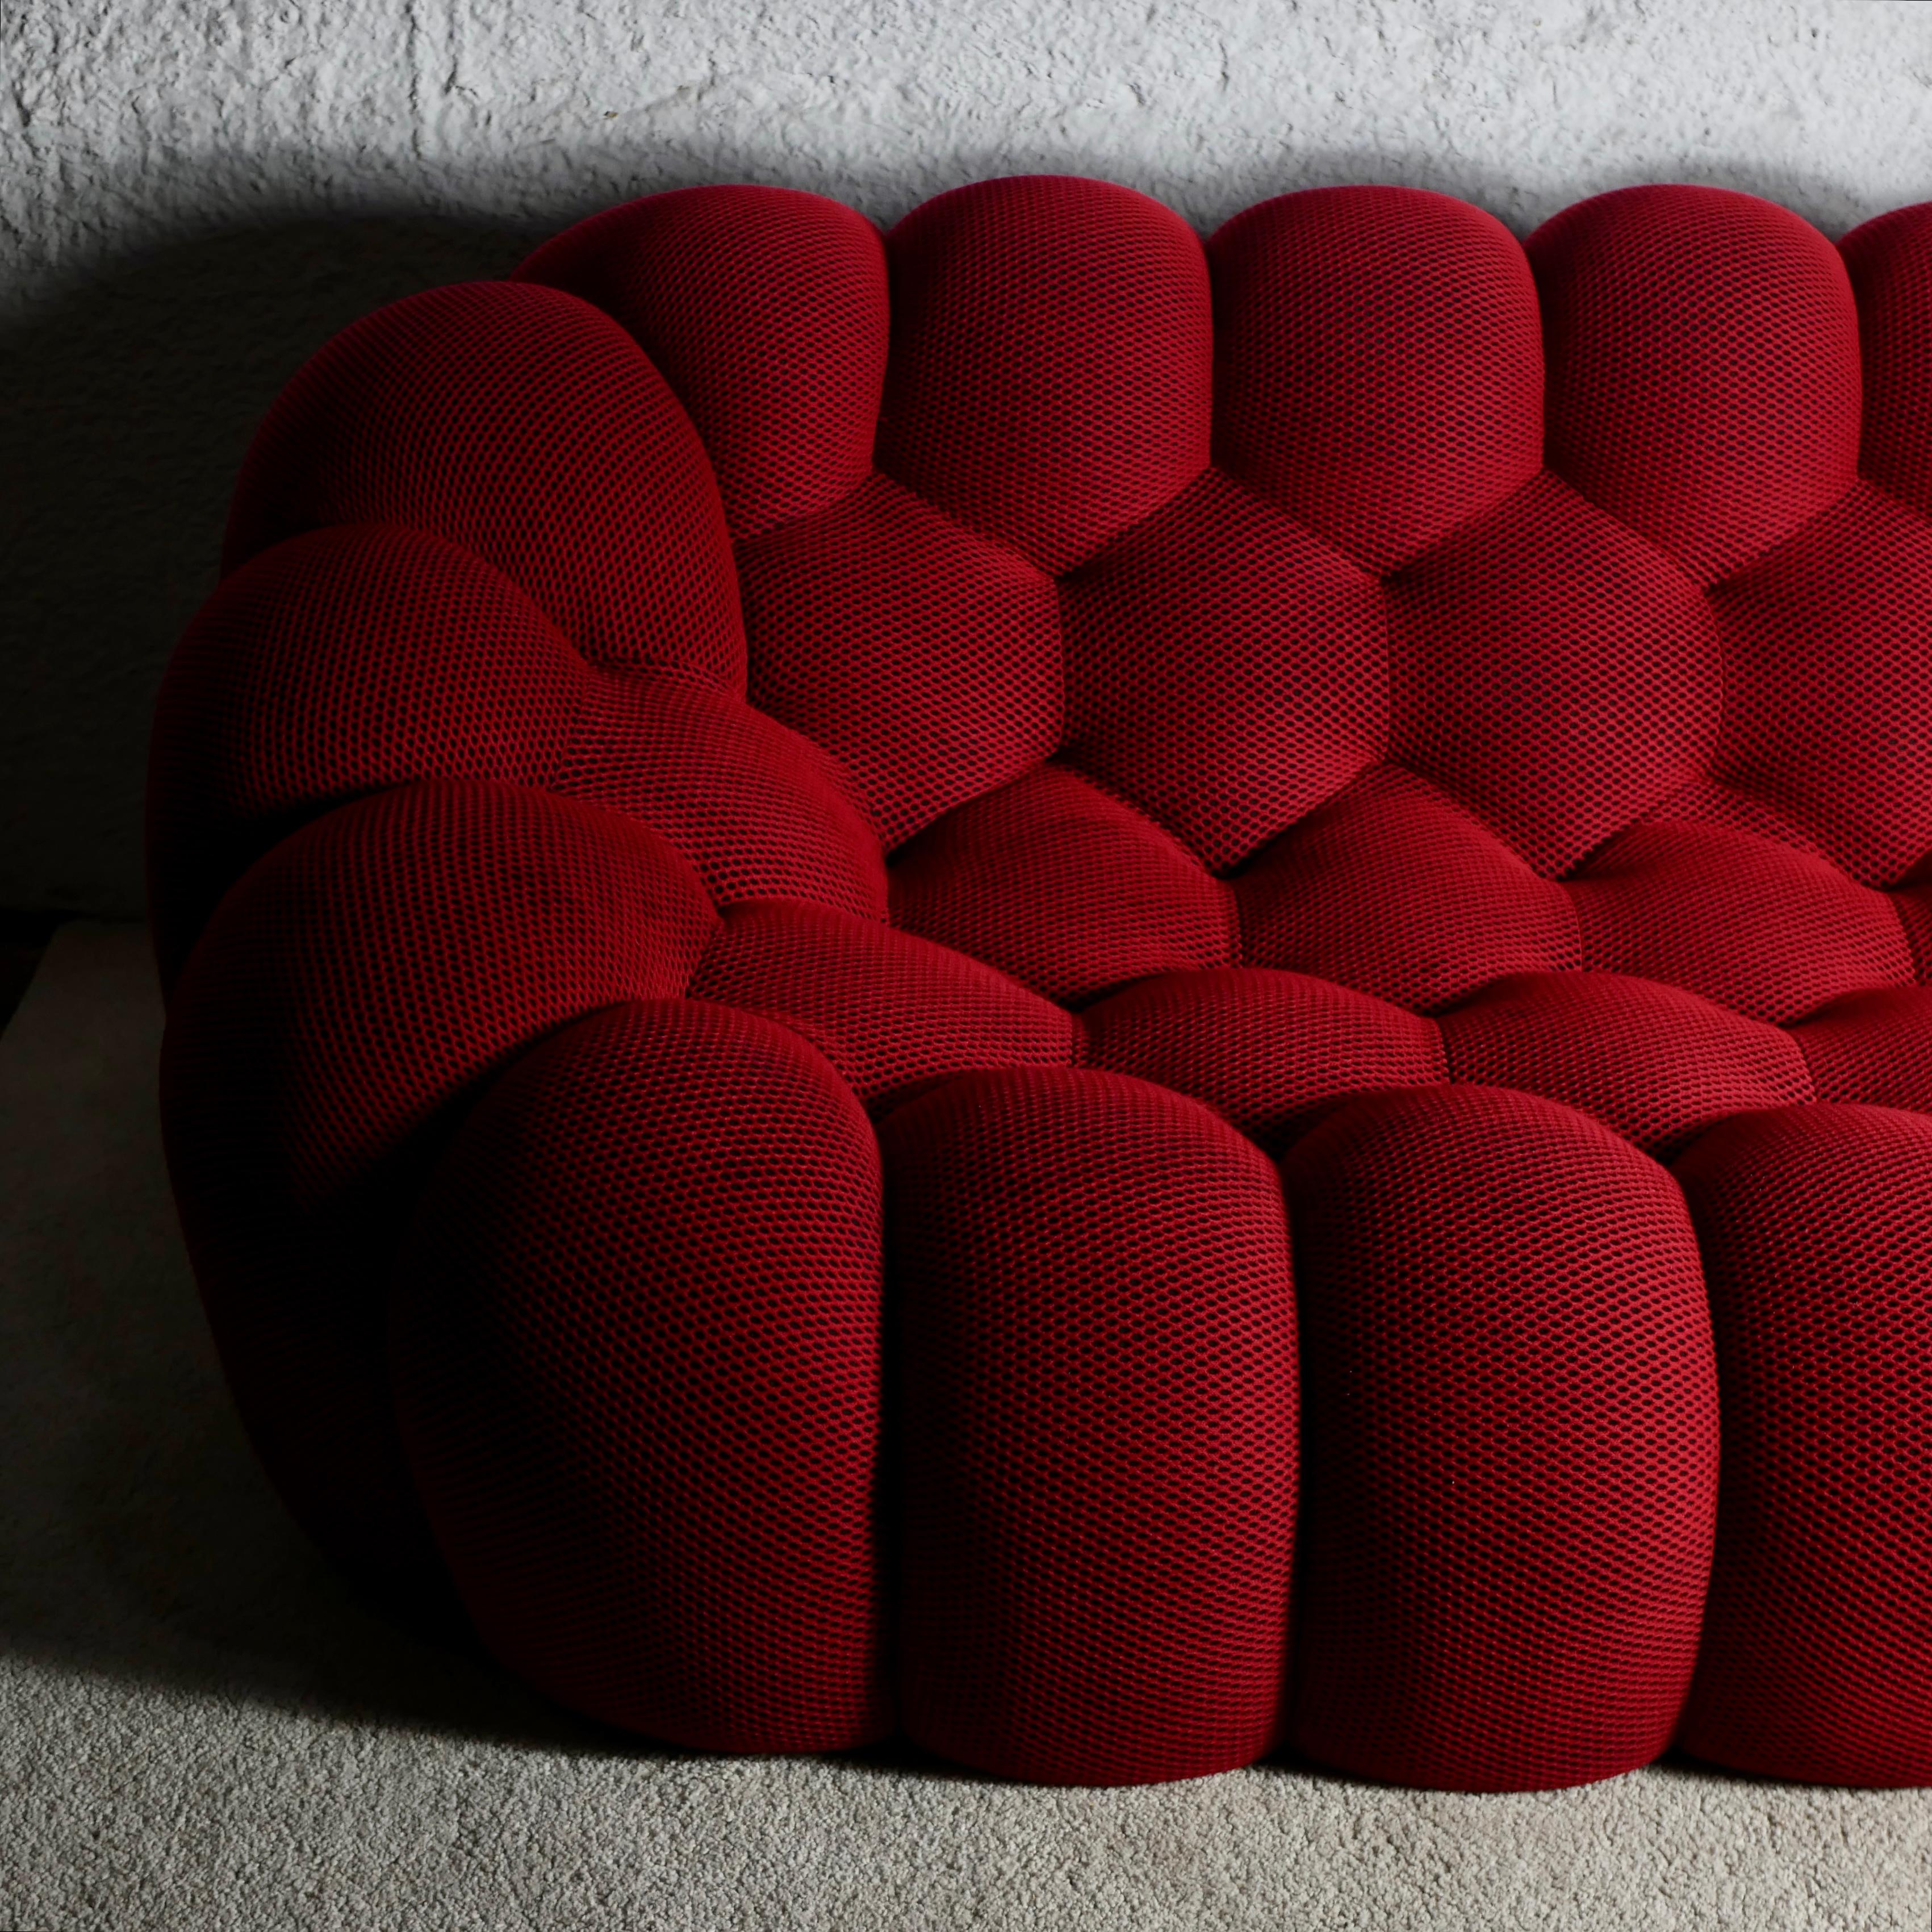 Futurist Bubble sofa Techno 3D fabric by Sacha Lakic for Roche Bobois, 2014